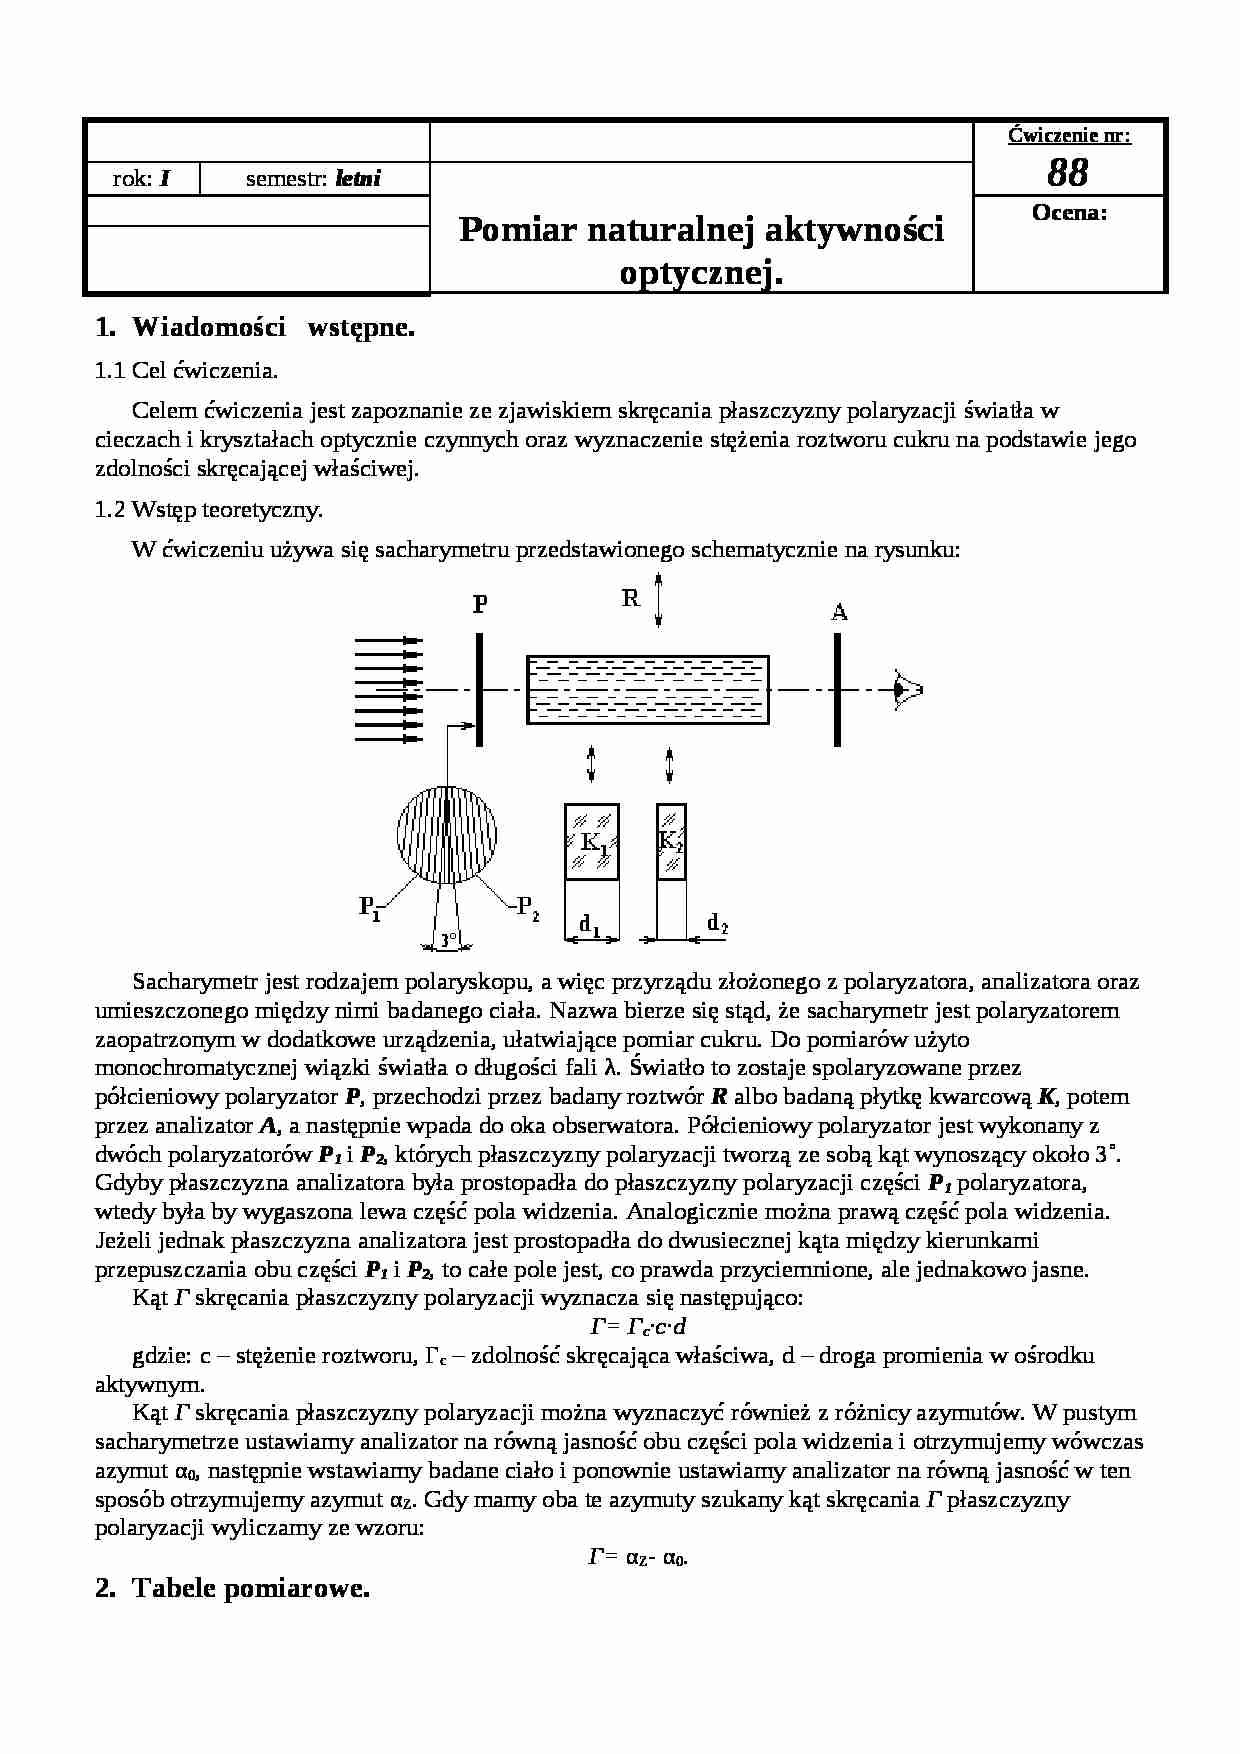 Pomiar naturalnej aktywności optycznej - wykład - strona 1